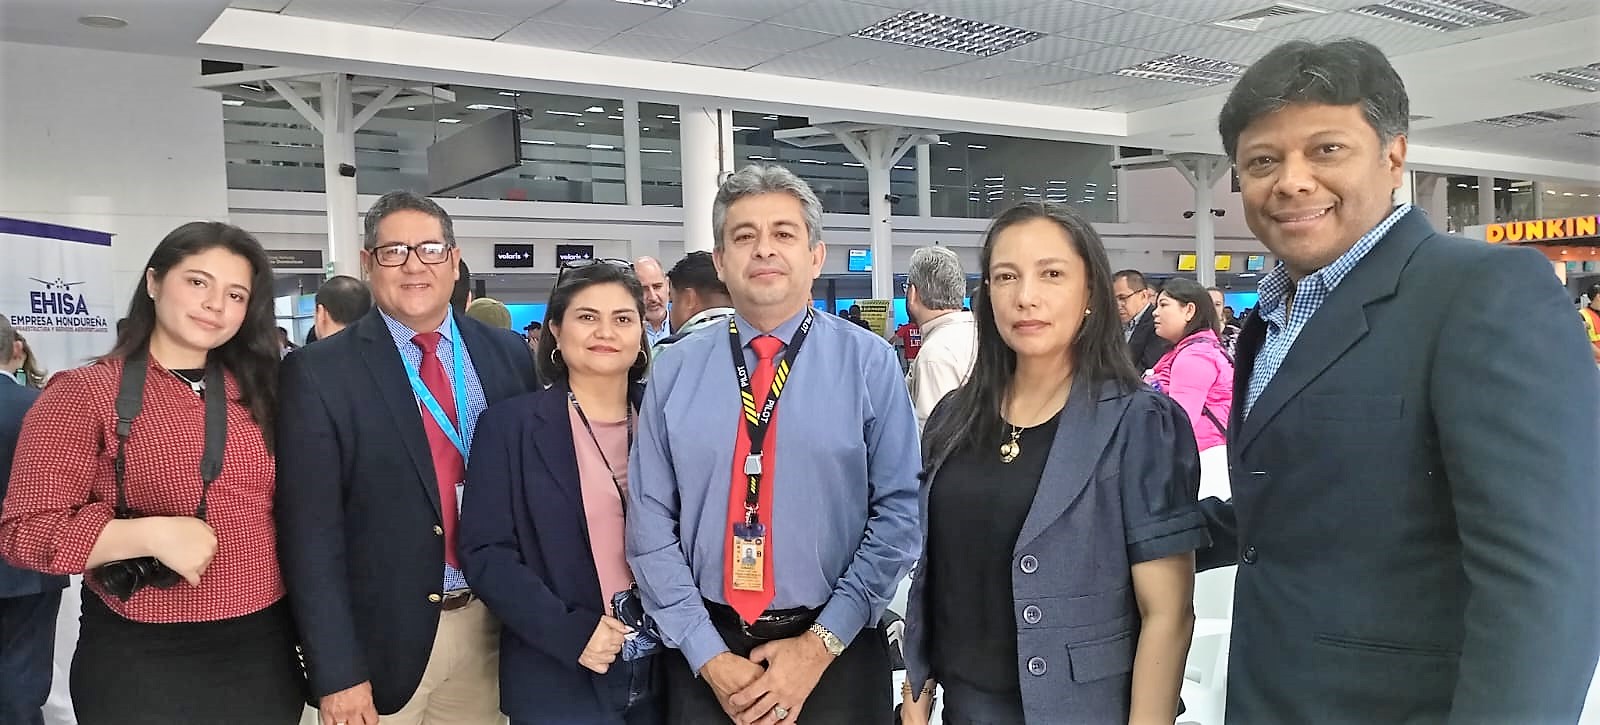 Volaris inaugura la ruta directa San Pedro Sula-Miami